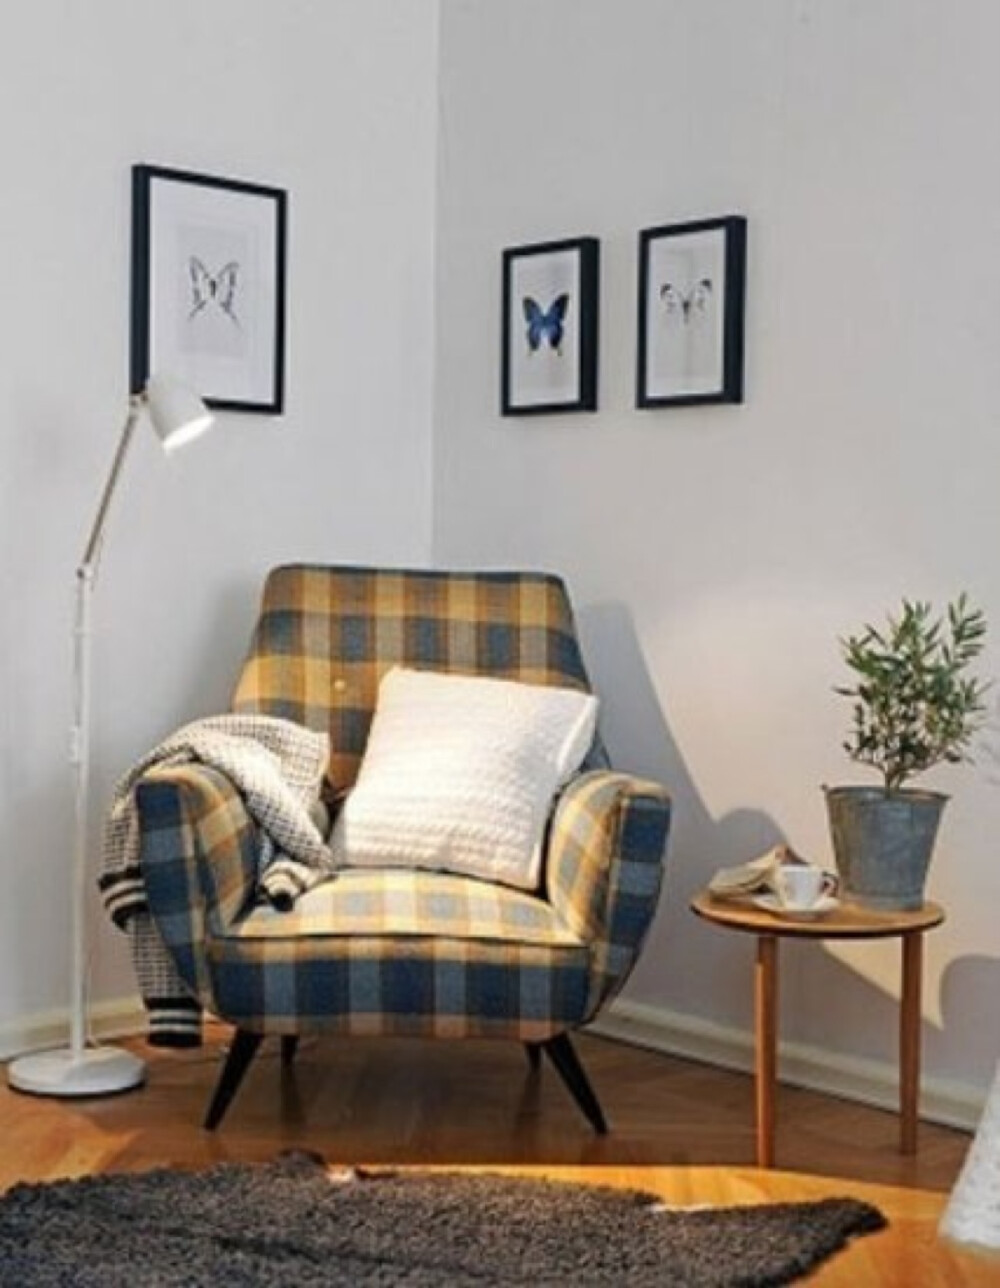 格纹布面单人沙发,整体造型略显简洁单薄